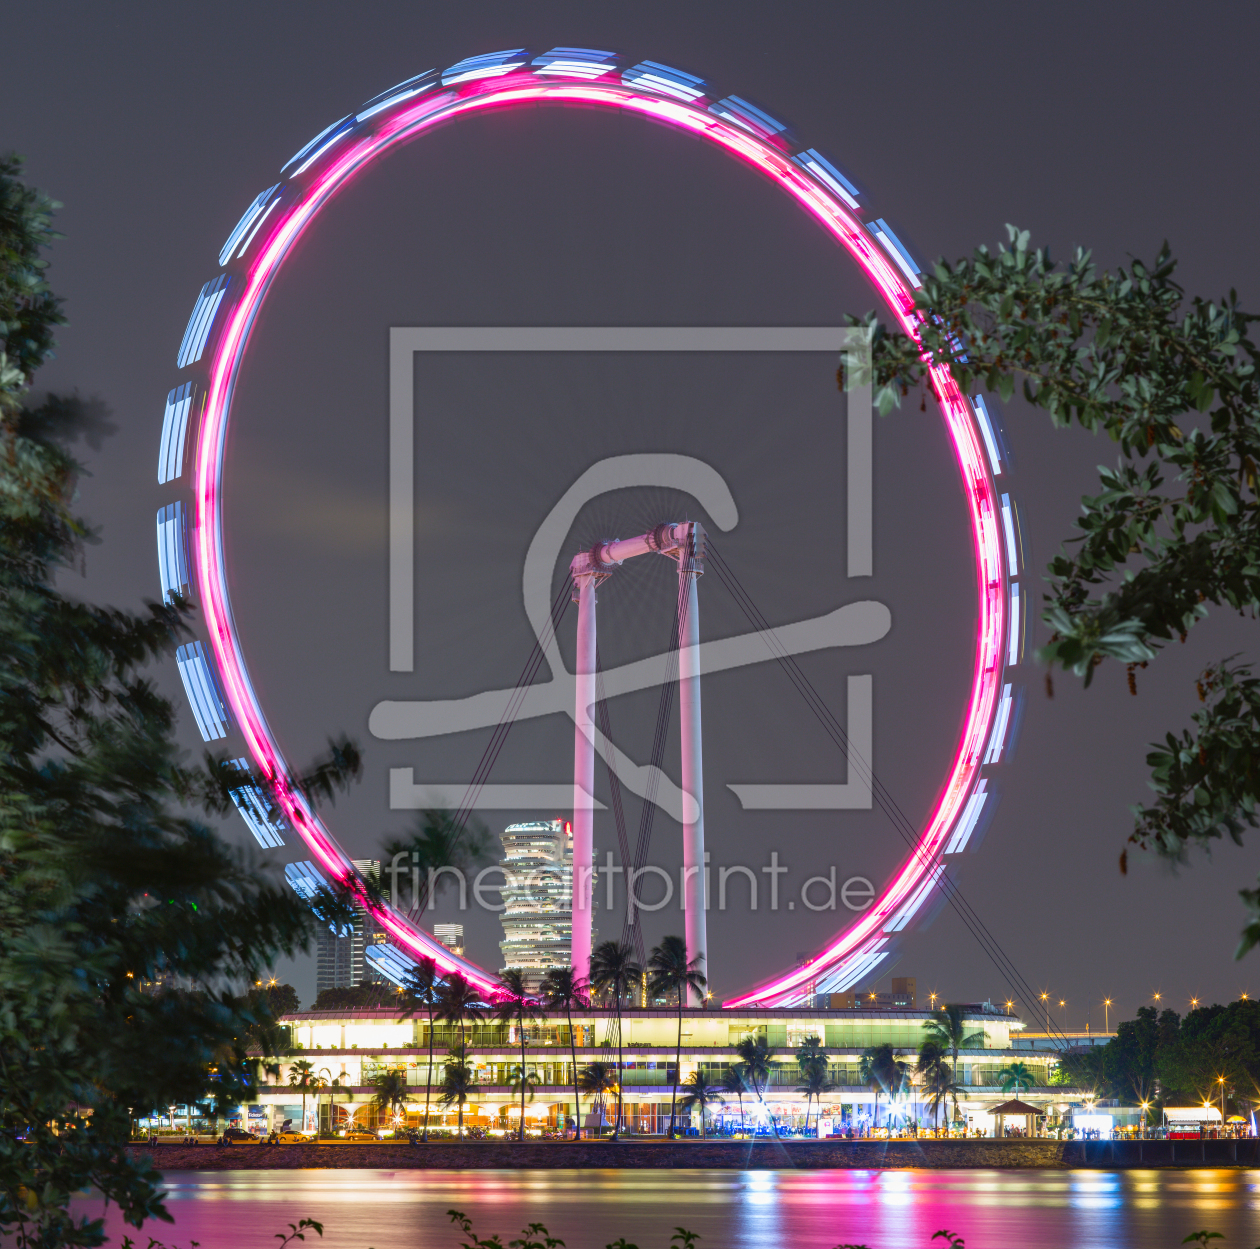 Bild-Nr.: 12483605 Ferris Wheel Singapore Flyer - Singapore erstellt von Yevgen